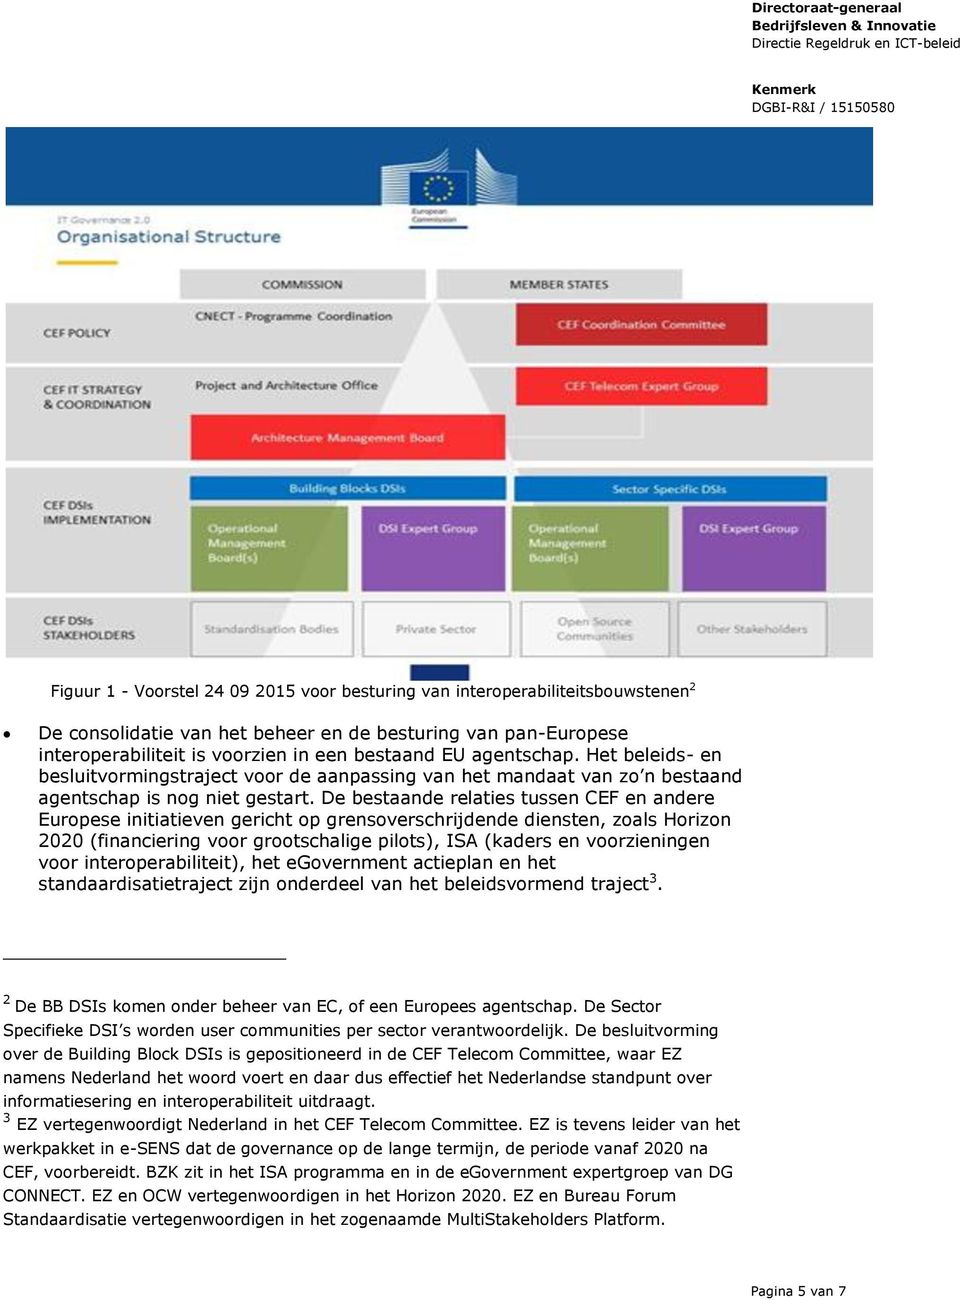 De bestaande relaties tussen CEF en andere Europese initiatieven gericht op grensoverschrijdende diensten, zoals Horizon 2020 (financiering voor grootschalige pilots), ISA (kaders en voorzieningen